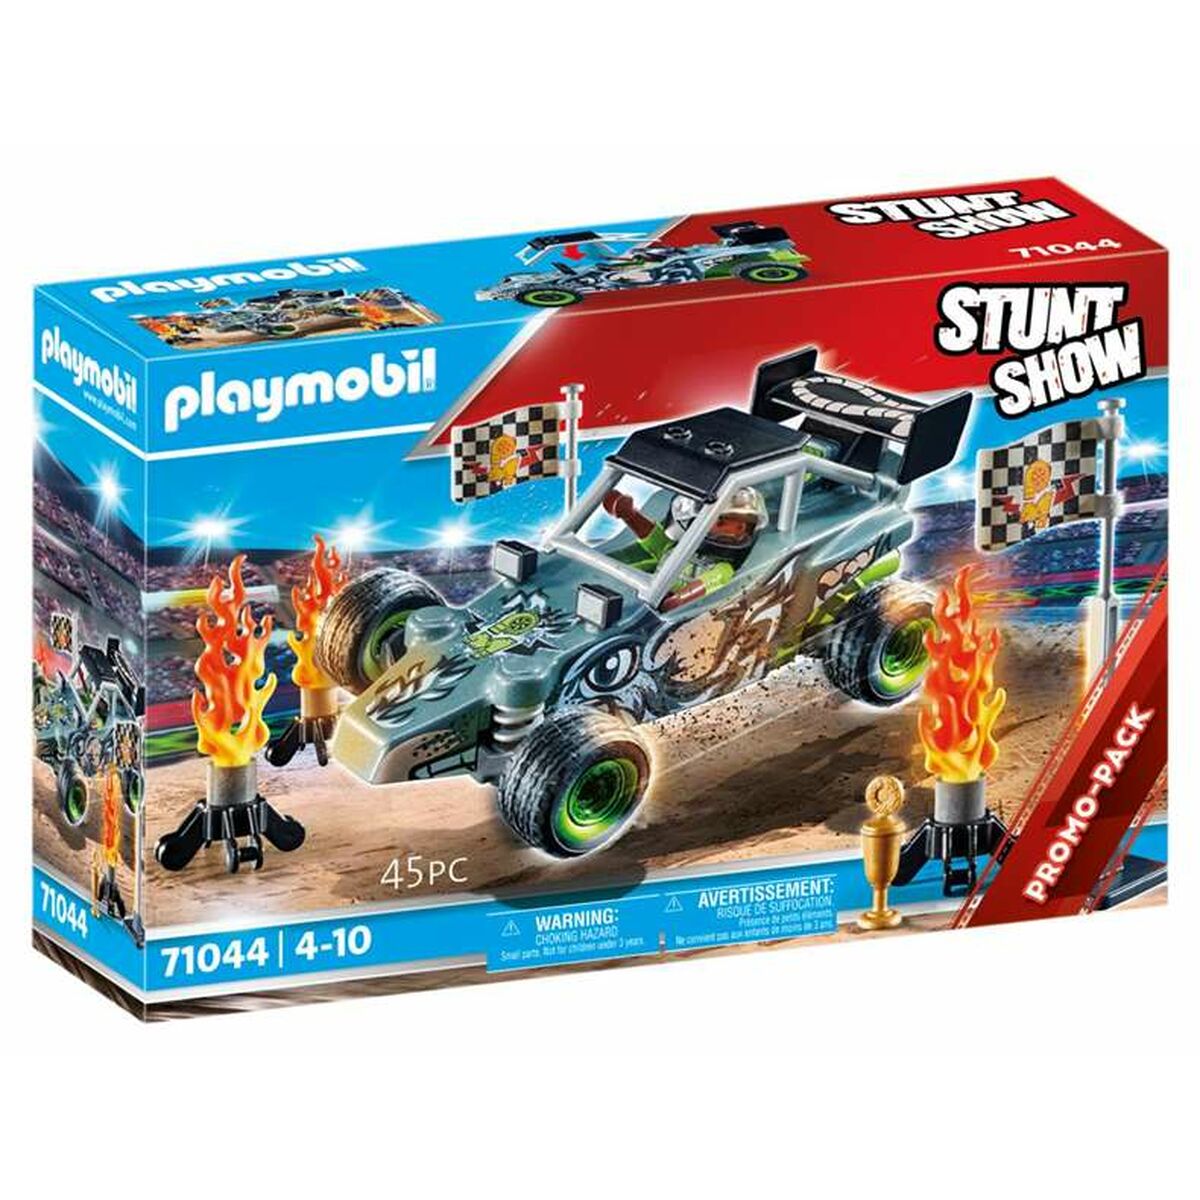 Playset Playmobil Stuntshow Racer 45 Pezzi - Disponibile in 3-4 giorni lavorativi